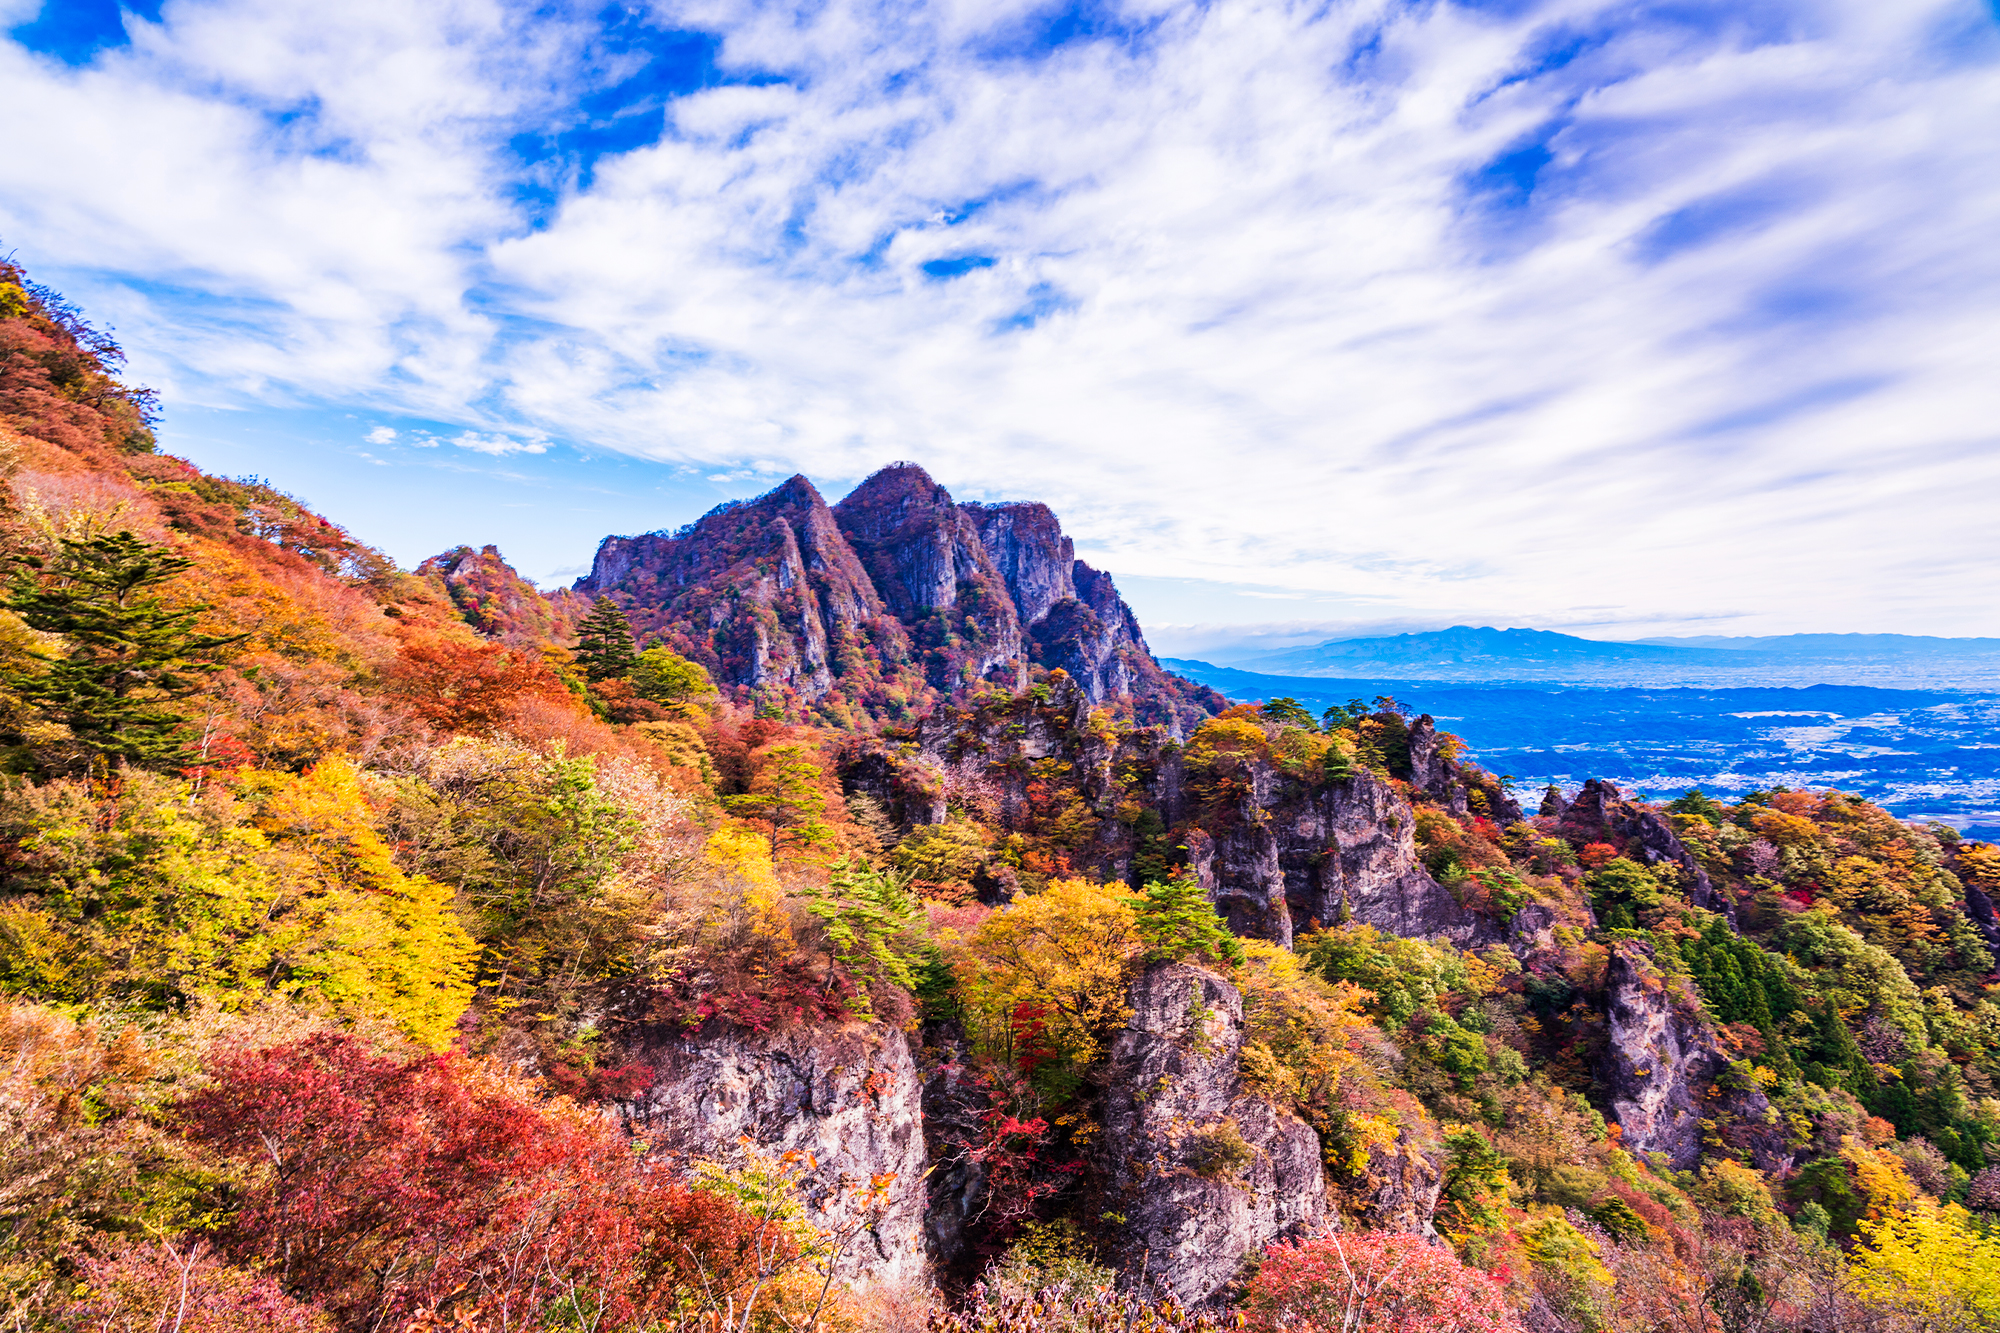 Autumn Leaves at Mt. Myogi